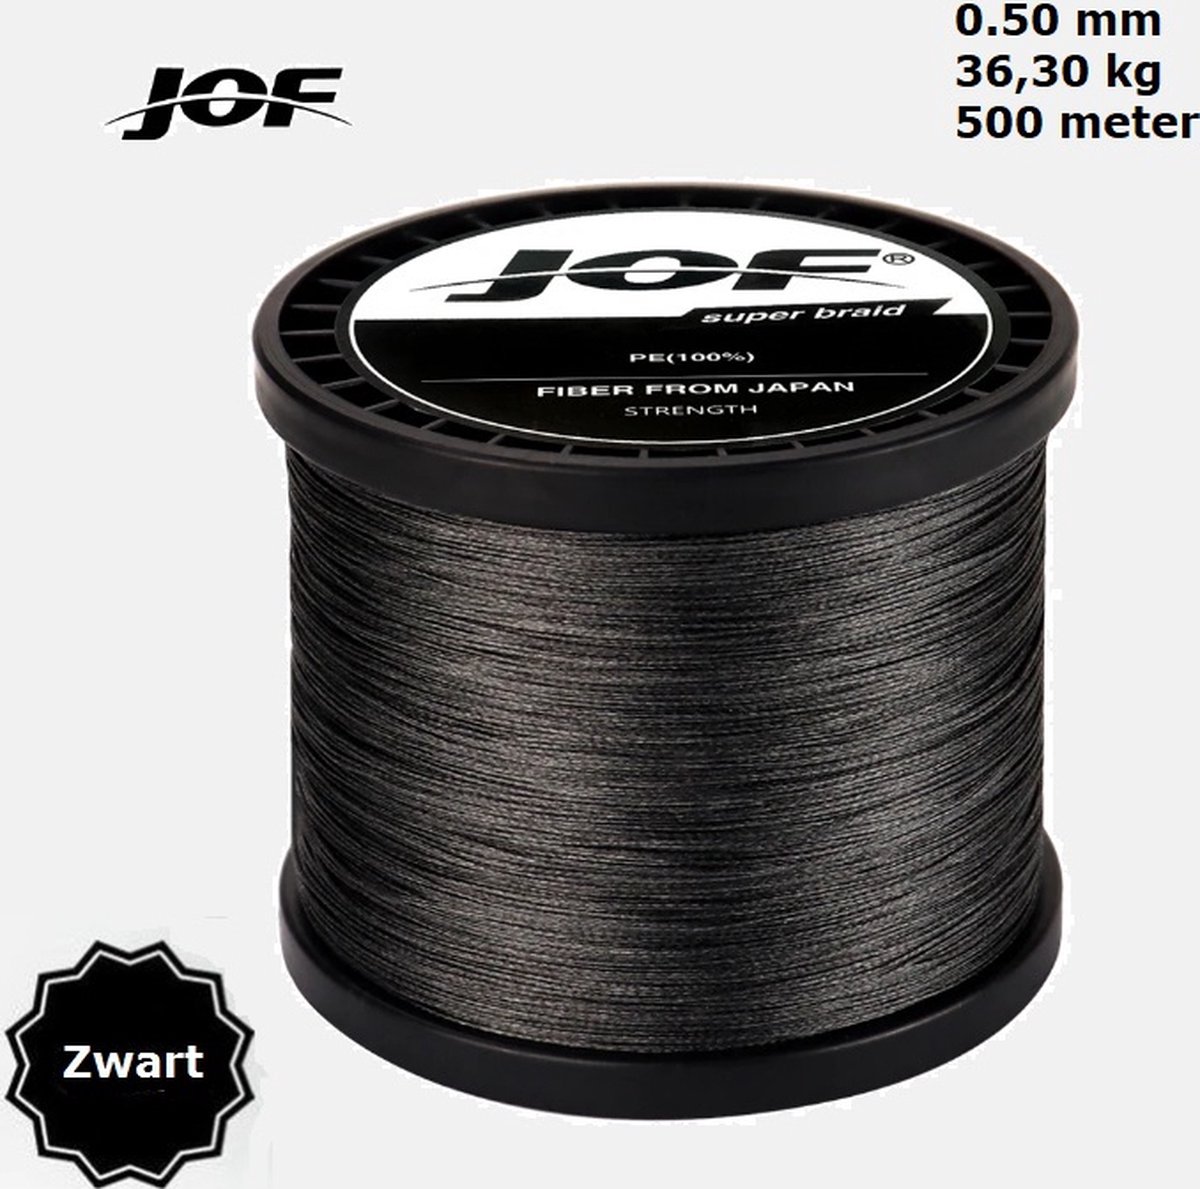 JOF 4X Gevlochten Vislijn / Visdraad - 0.50 mm - 36,30 KG - 500 meter – Zwart - 